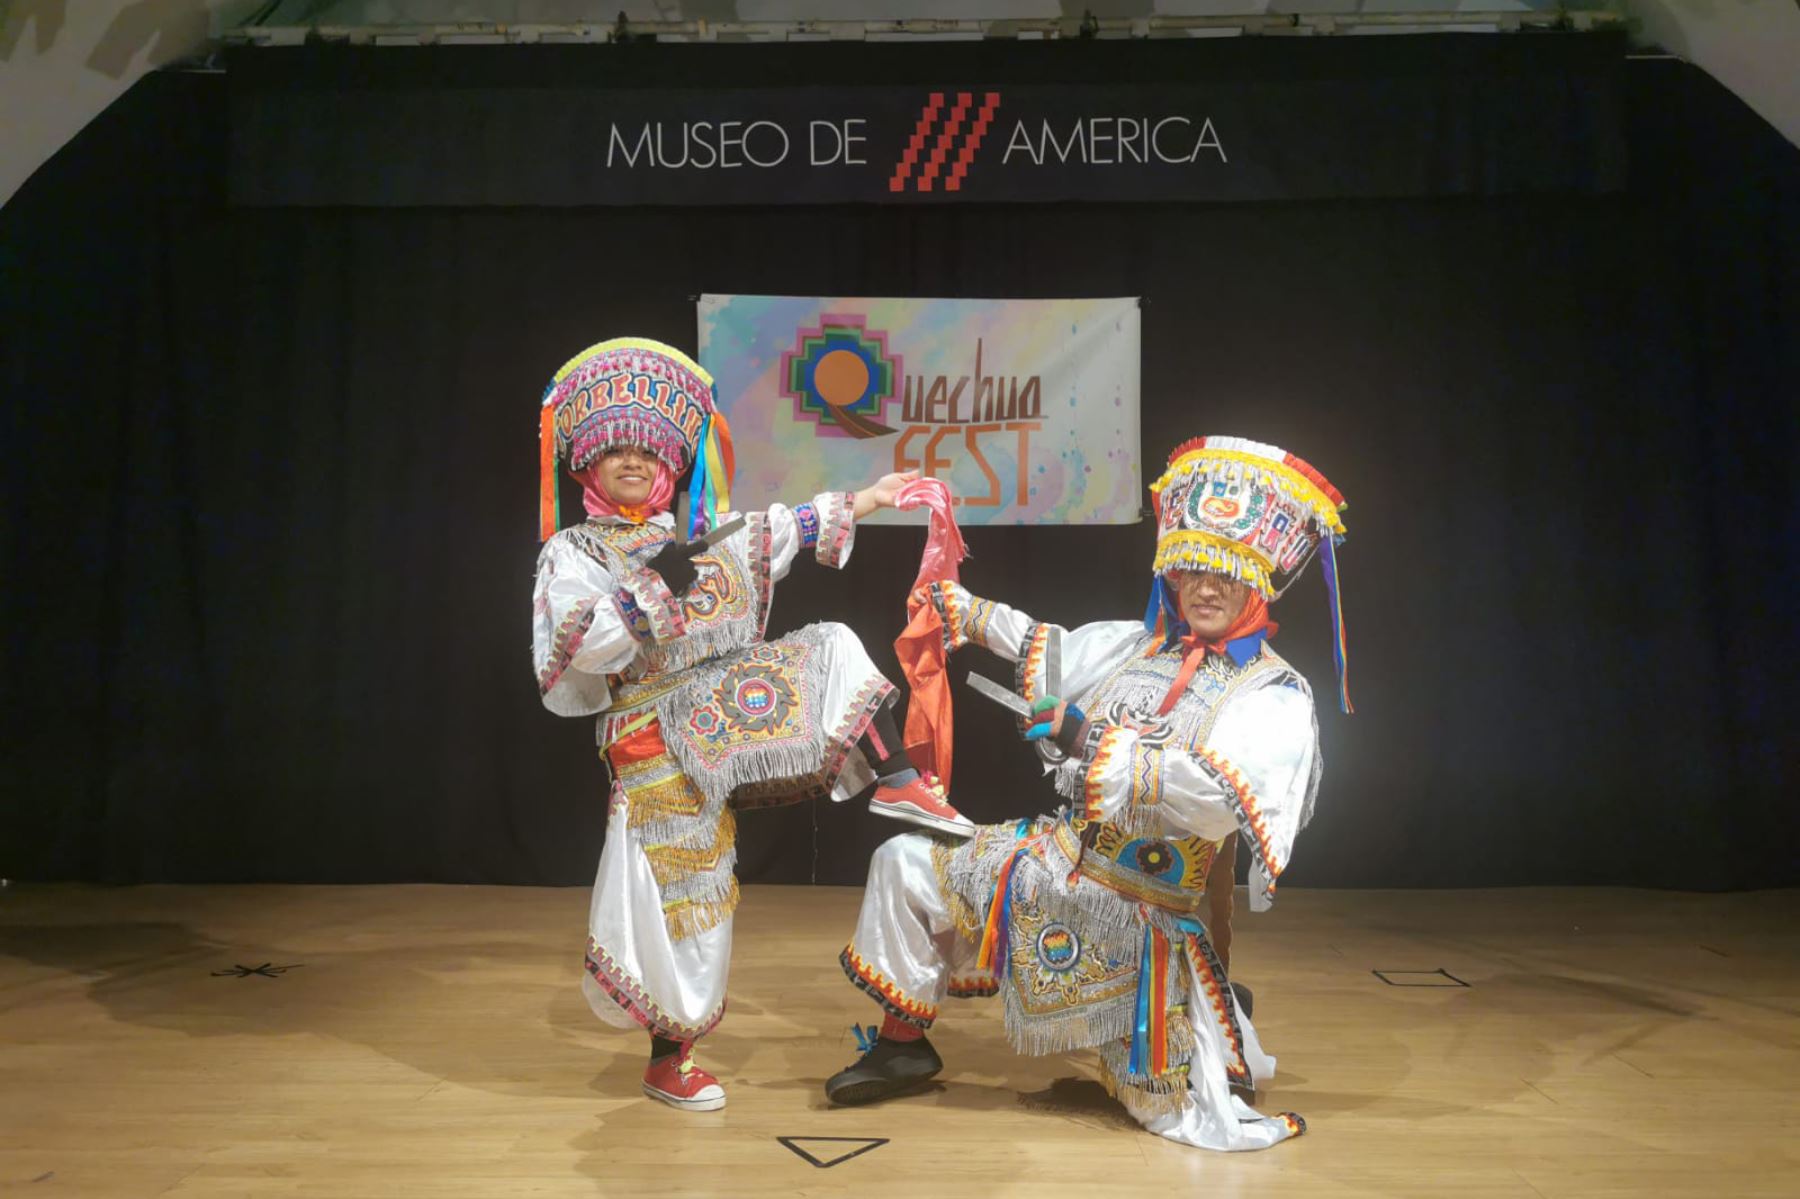 En el marco de la reciente declaración de la UNESCO del Decenio Internacional de las Lenguas Indígenas del Mundo, se realizo  el festival cultural “Quechuafest 2022” en el  lMuseo de América de Madrid.
Foto: Ministerio de Relaciones Exteriores